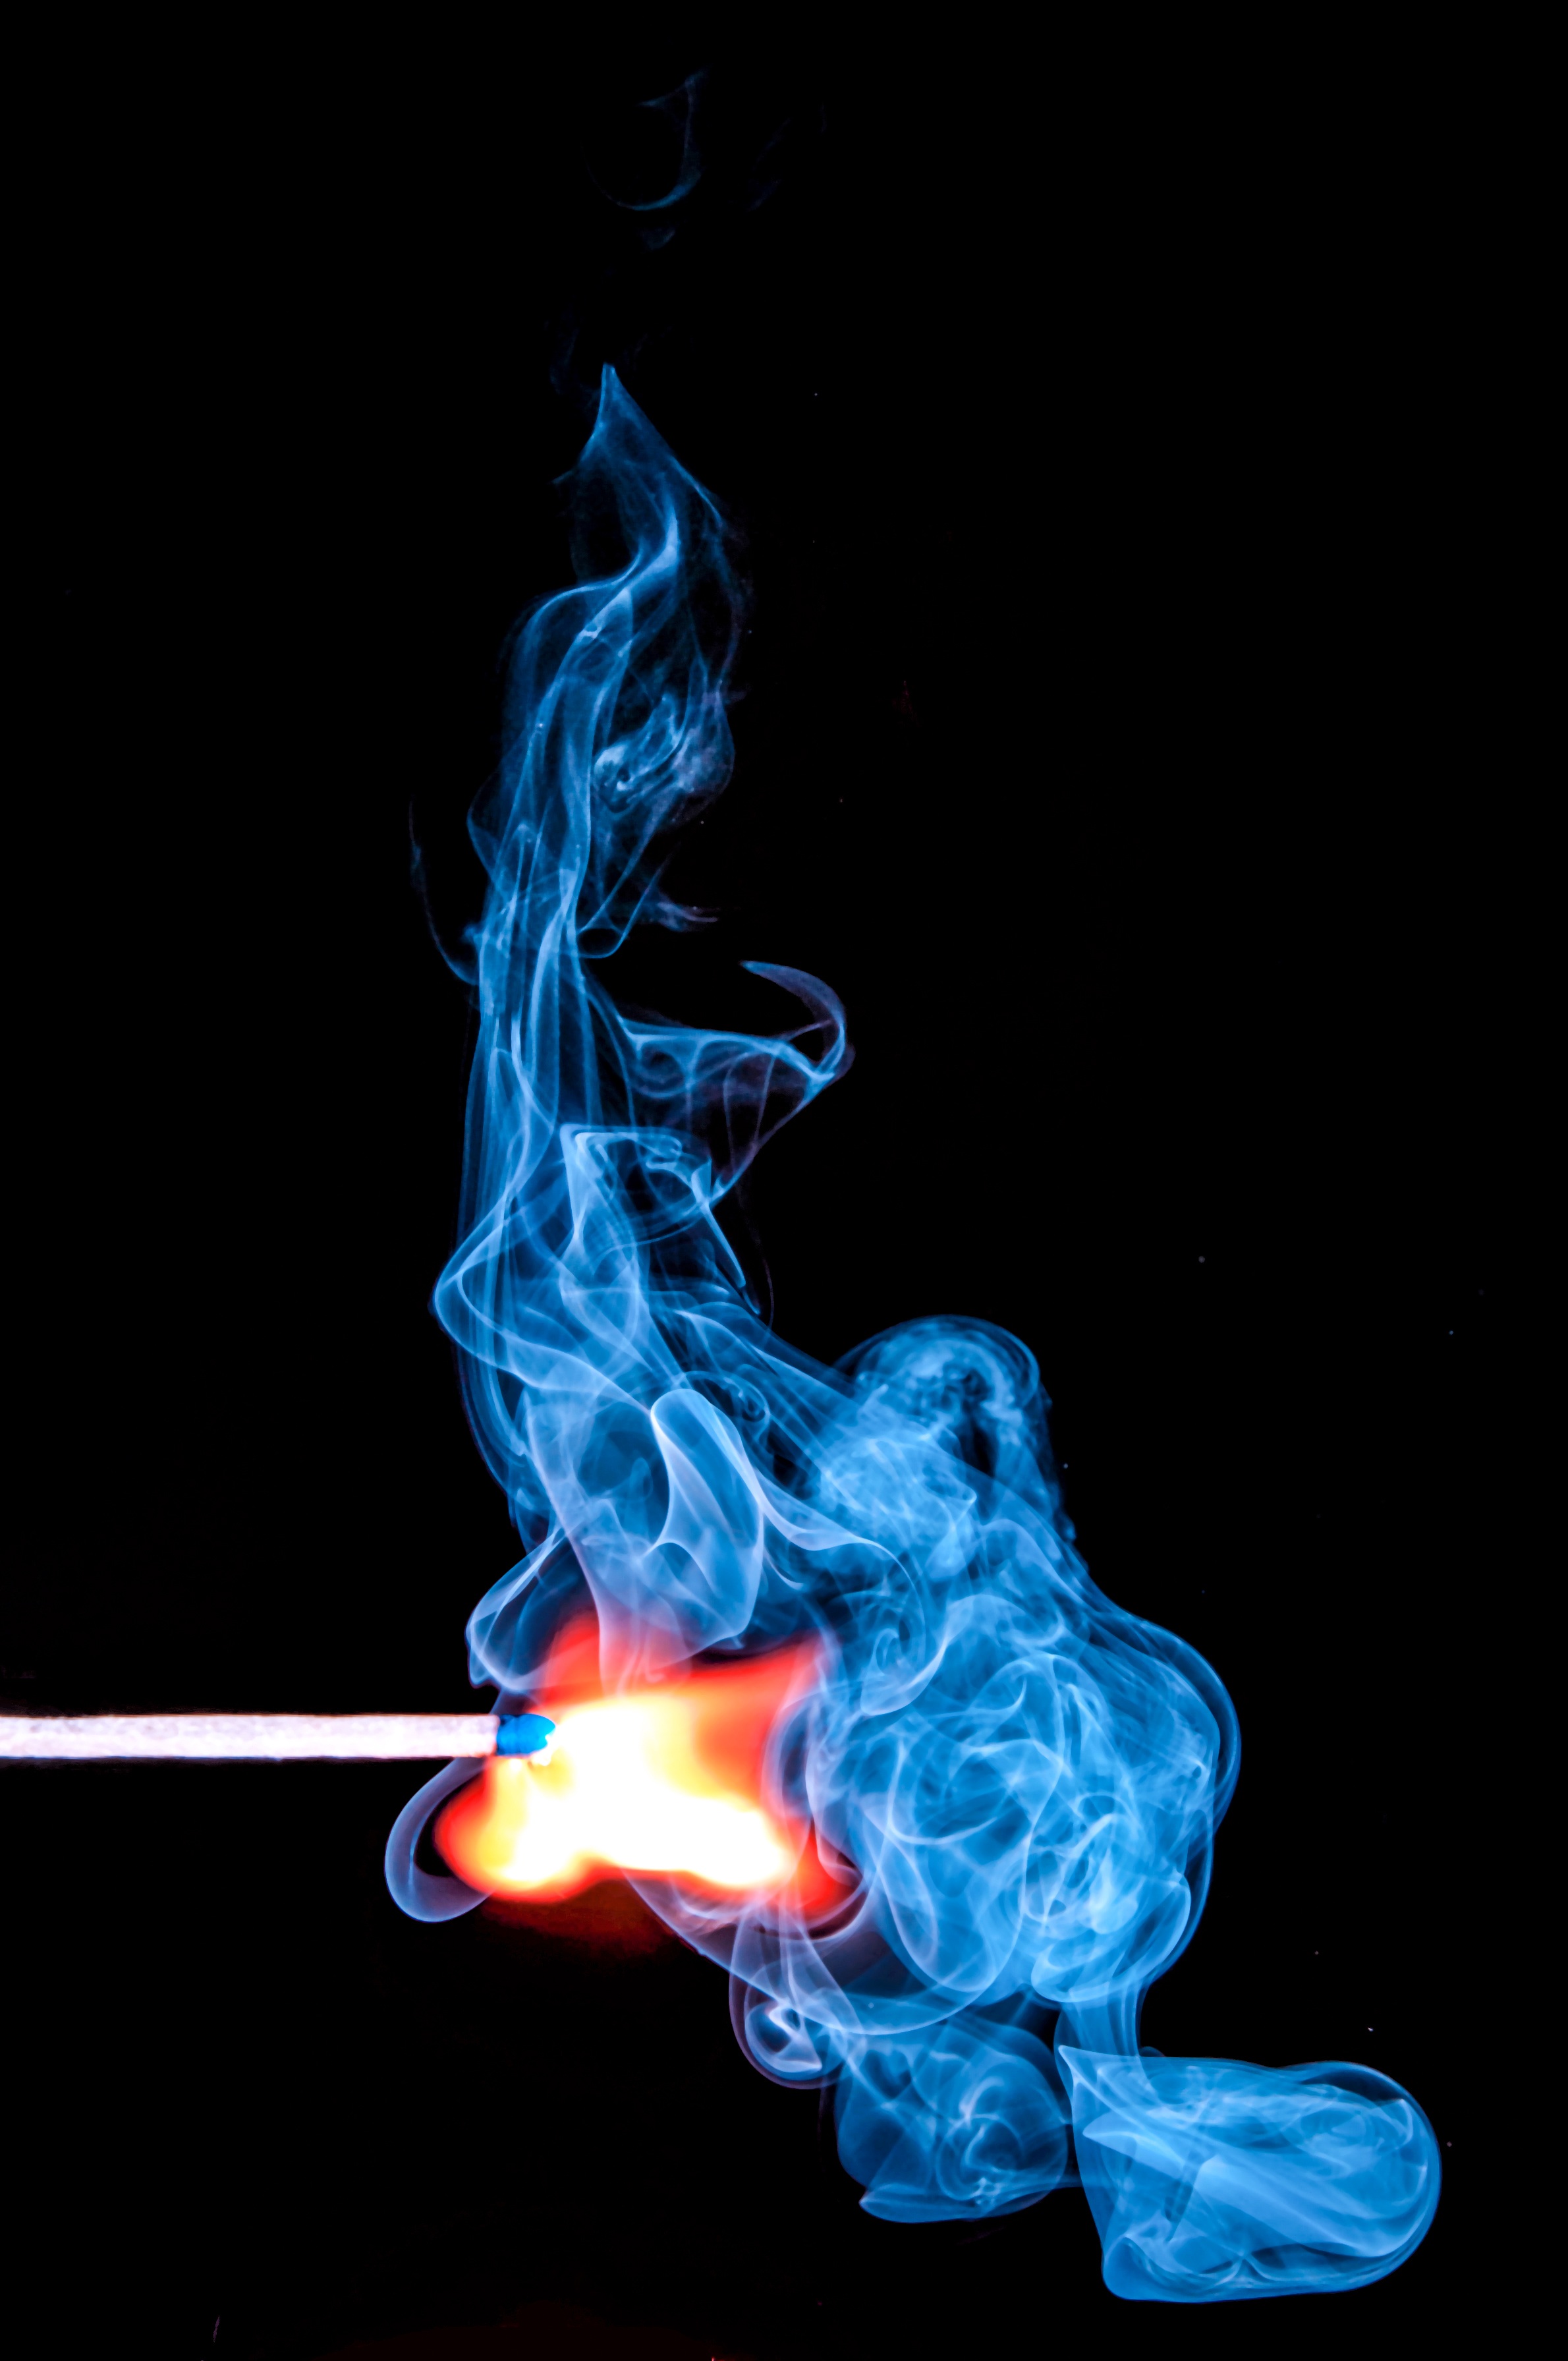 smoke, match, clots, fire, miscellanea, miscellaneous Free Stock Photo